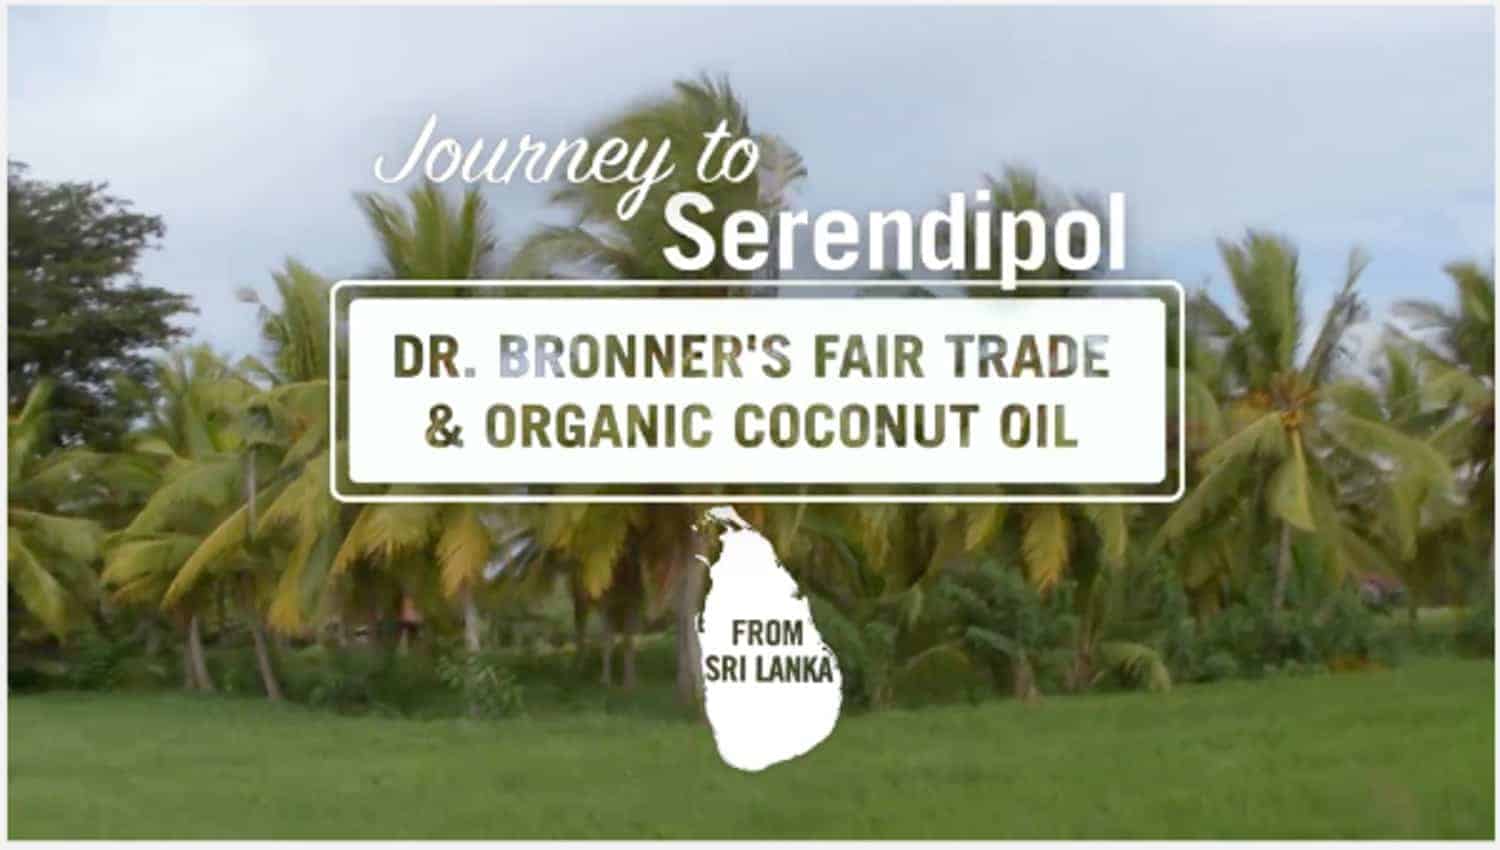 该公司Bronner博士不仅创建了良好的味道，可持续的肥皂和个人护理物品。他们还从斯里兰卡的小型农民那里购买有机，公平贸易椰子油，帮助创造了一种健康且可持续的产品，并增加了农民的收入和在社区中繁衍生息的能力。